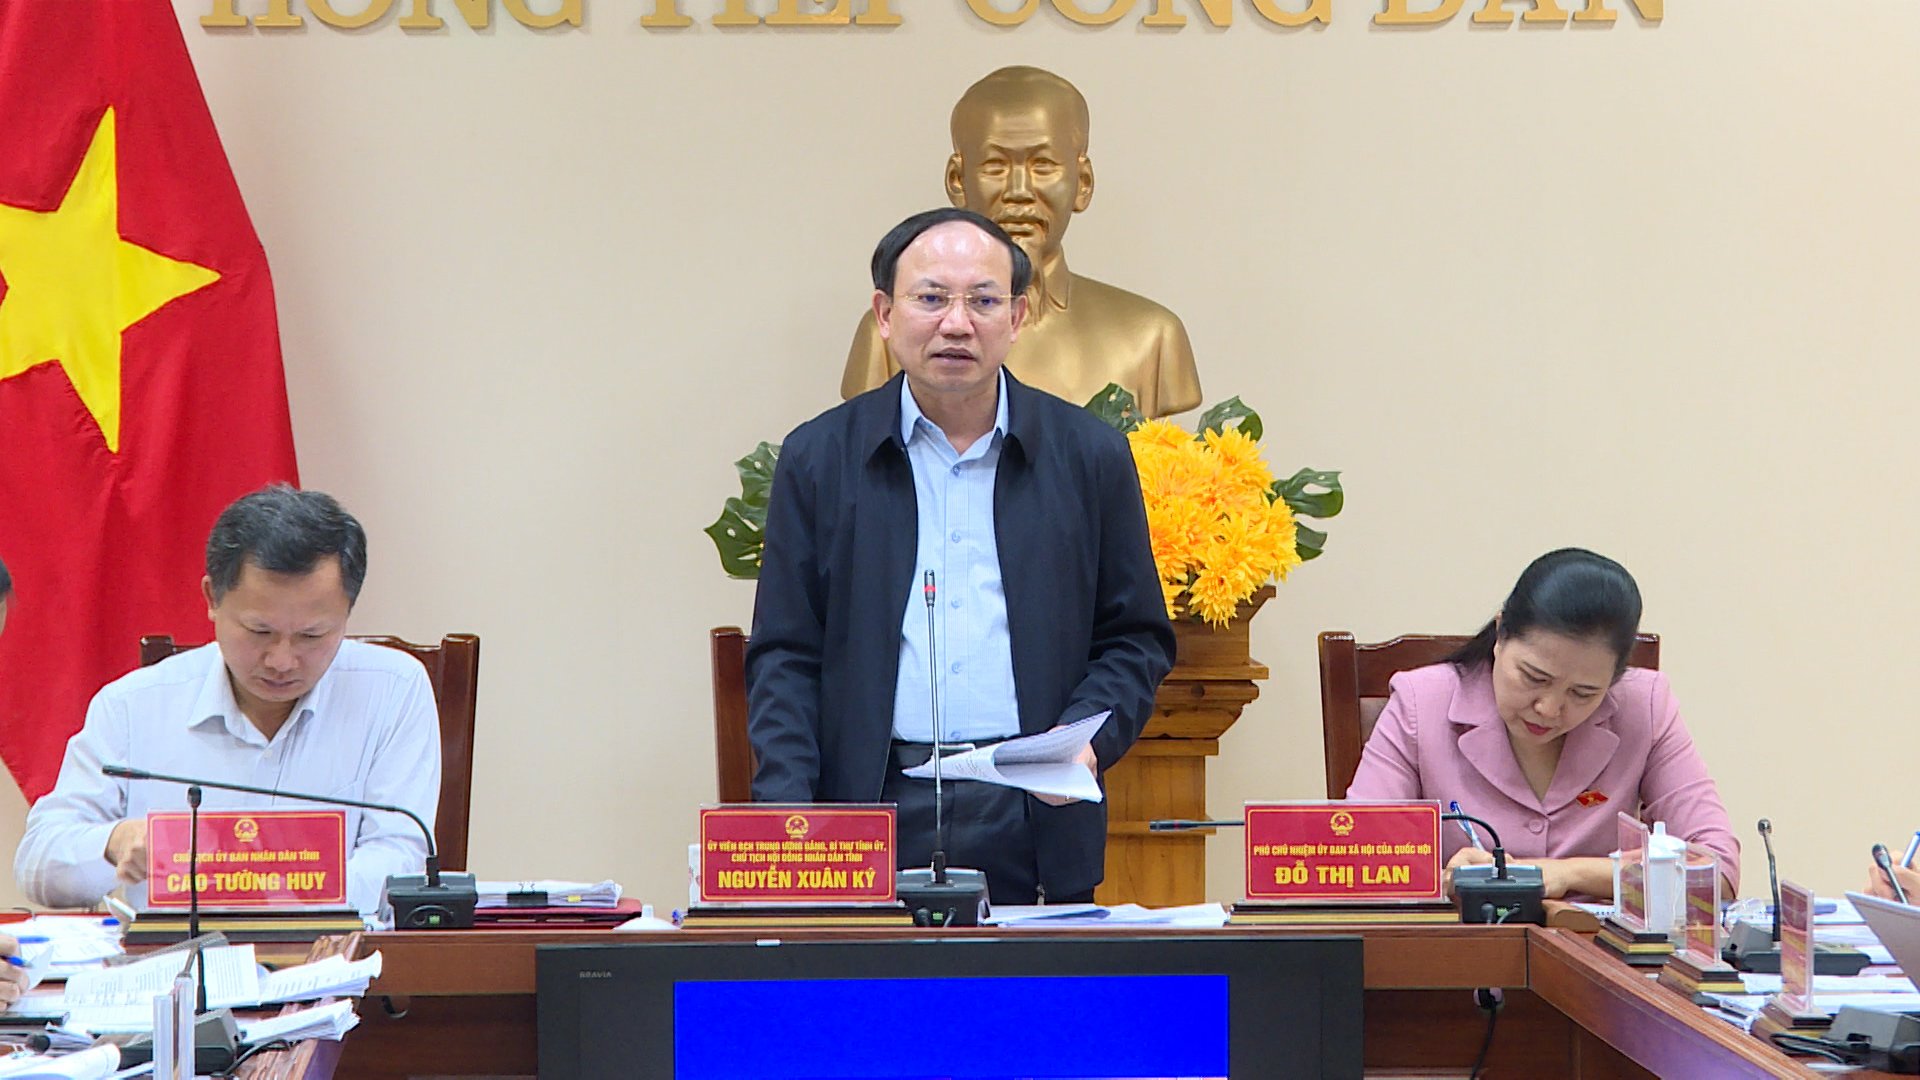 Đồng chí Nguyễn Xuân Ký, Ủy viên Trung ương Đảng, Bí thư Tỉnh ủy, Chủ tịch HĐND tỉnh chỉ đạo giải quyết các vụ việc.